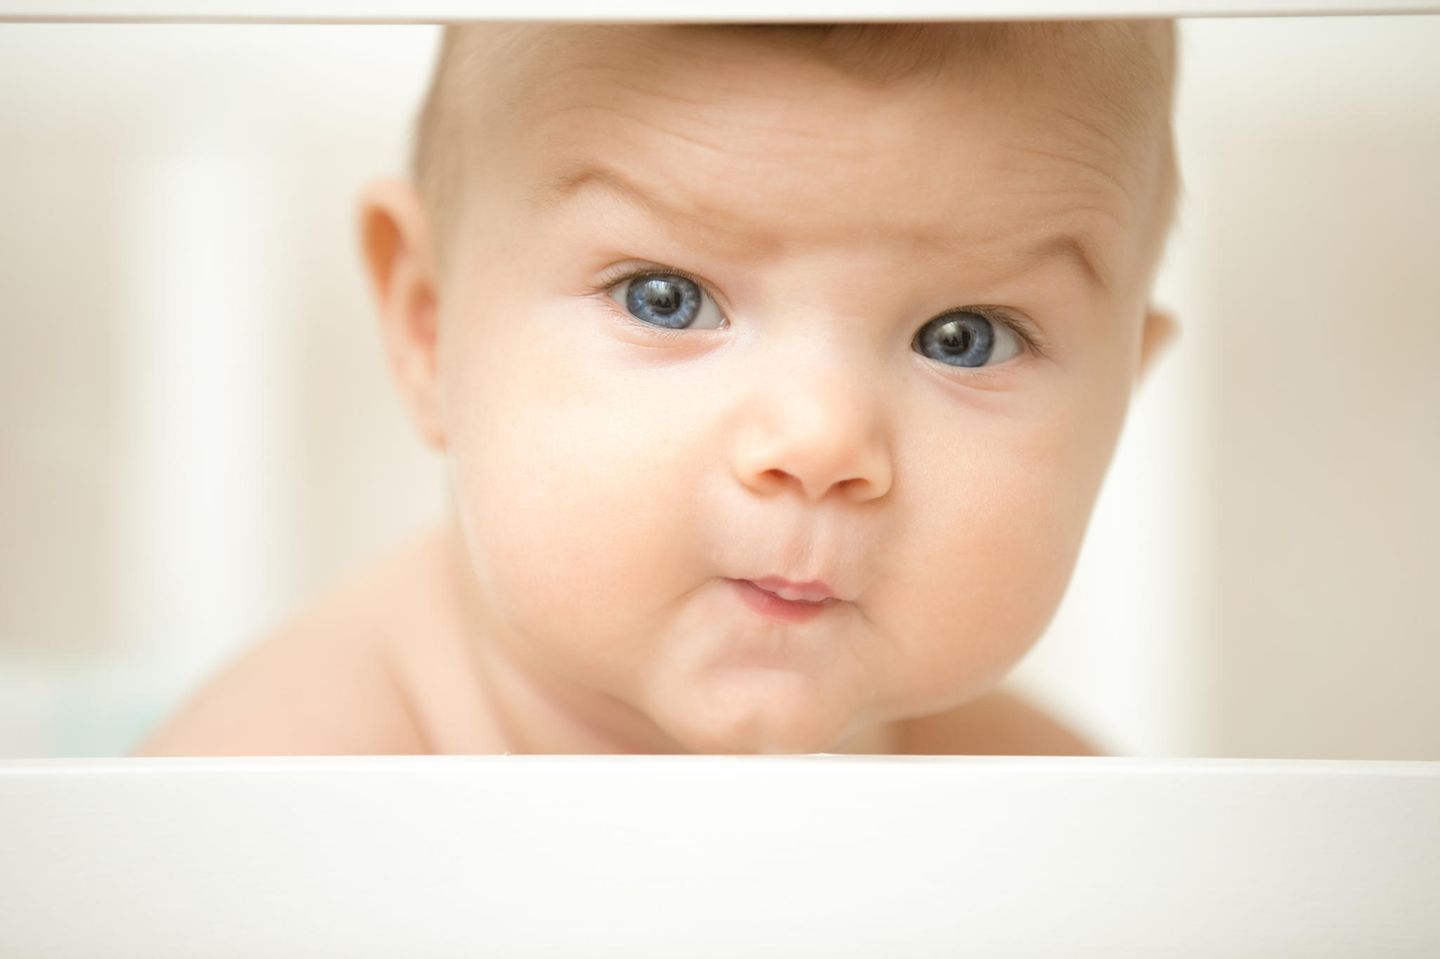 Vorname: Baby verzieht die Augenbrauen